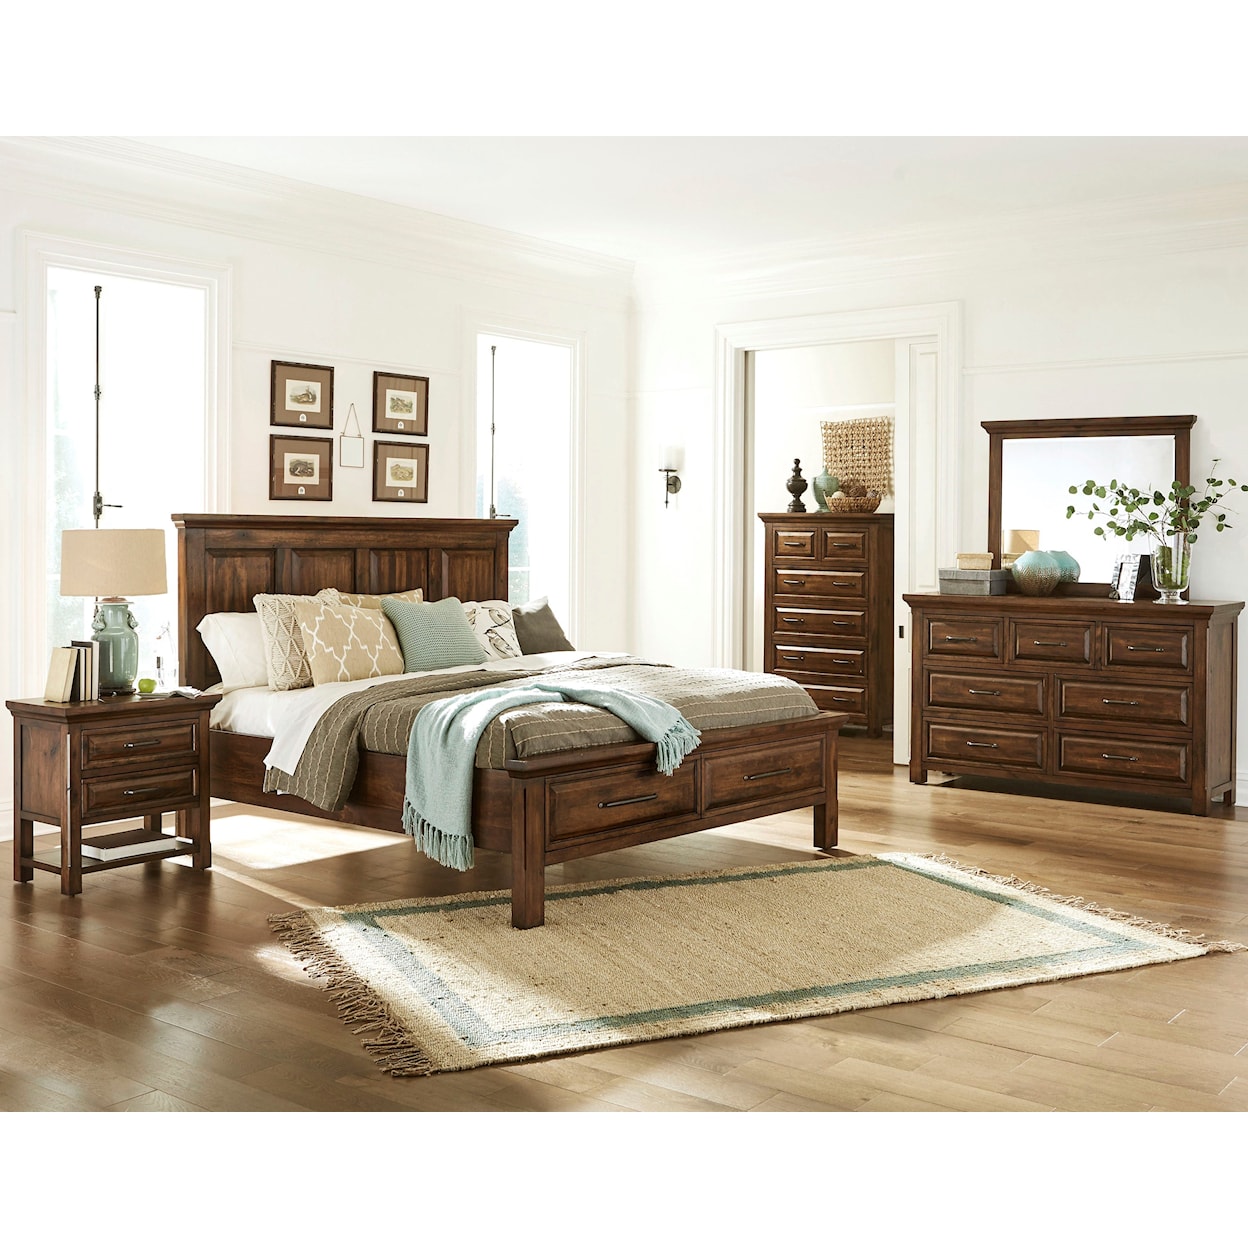 Harris Furniture Hill Crest 7-Drawer Dresser